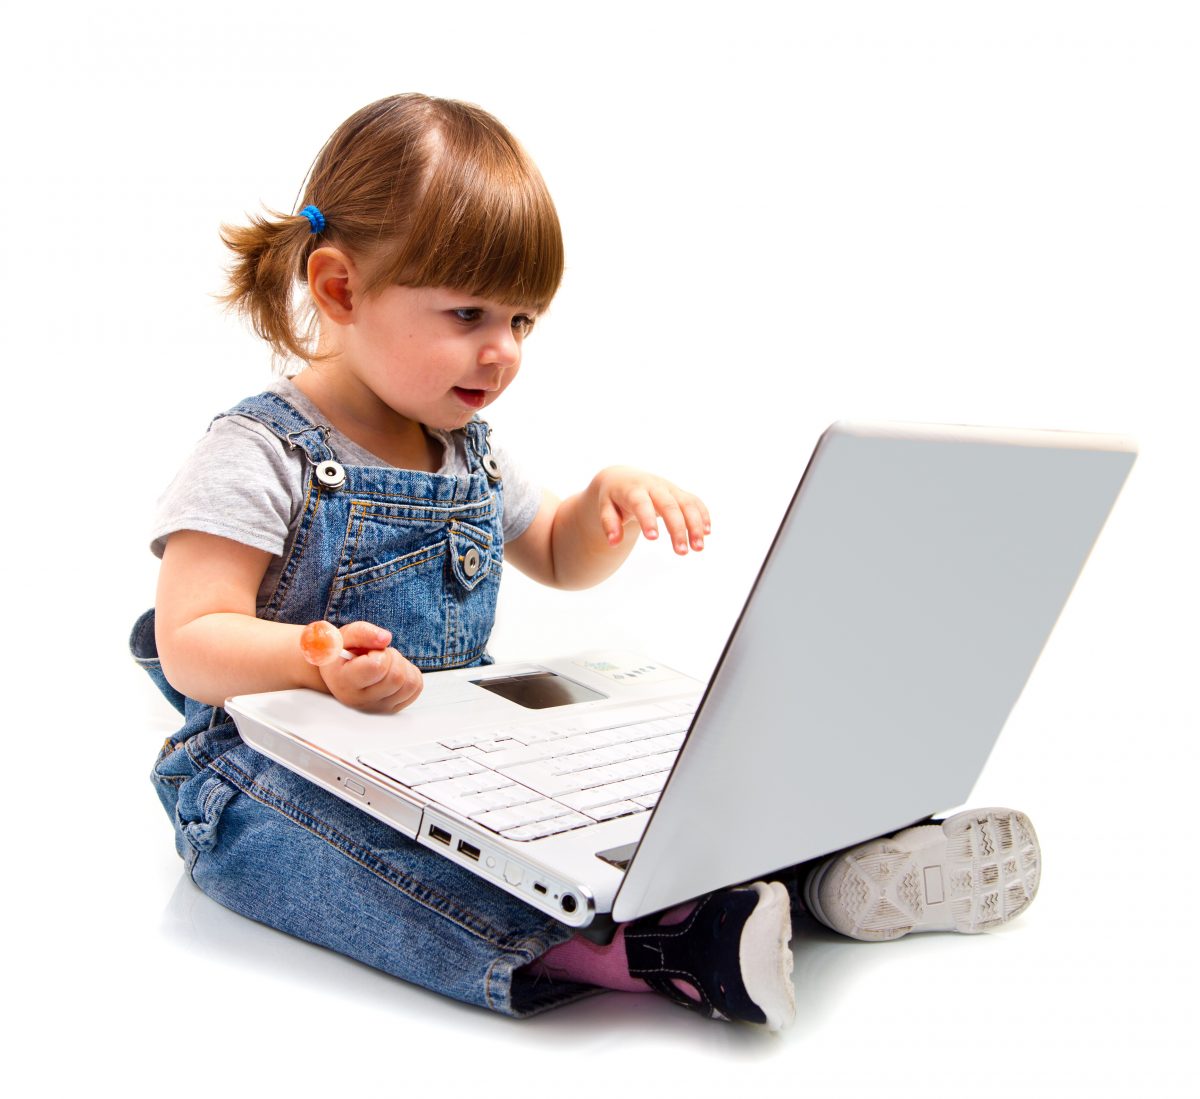 «Η χρήση του ηλεκτρονικού υπολογιστή ως εναλλακτικού μέσου επικοινωνίας παιδιού με κινητική αναπηρία και δυσκολίες στην εκφορά λόγου μέσα στην τάξη.»